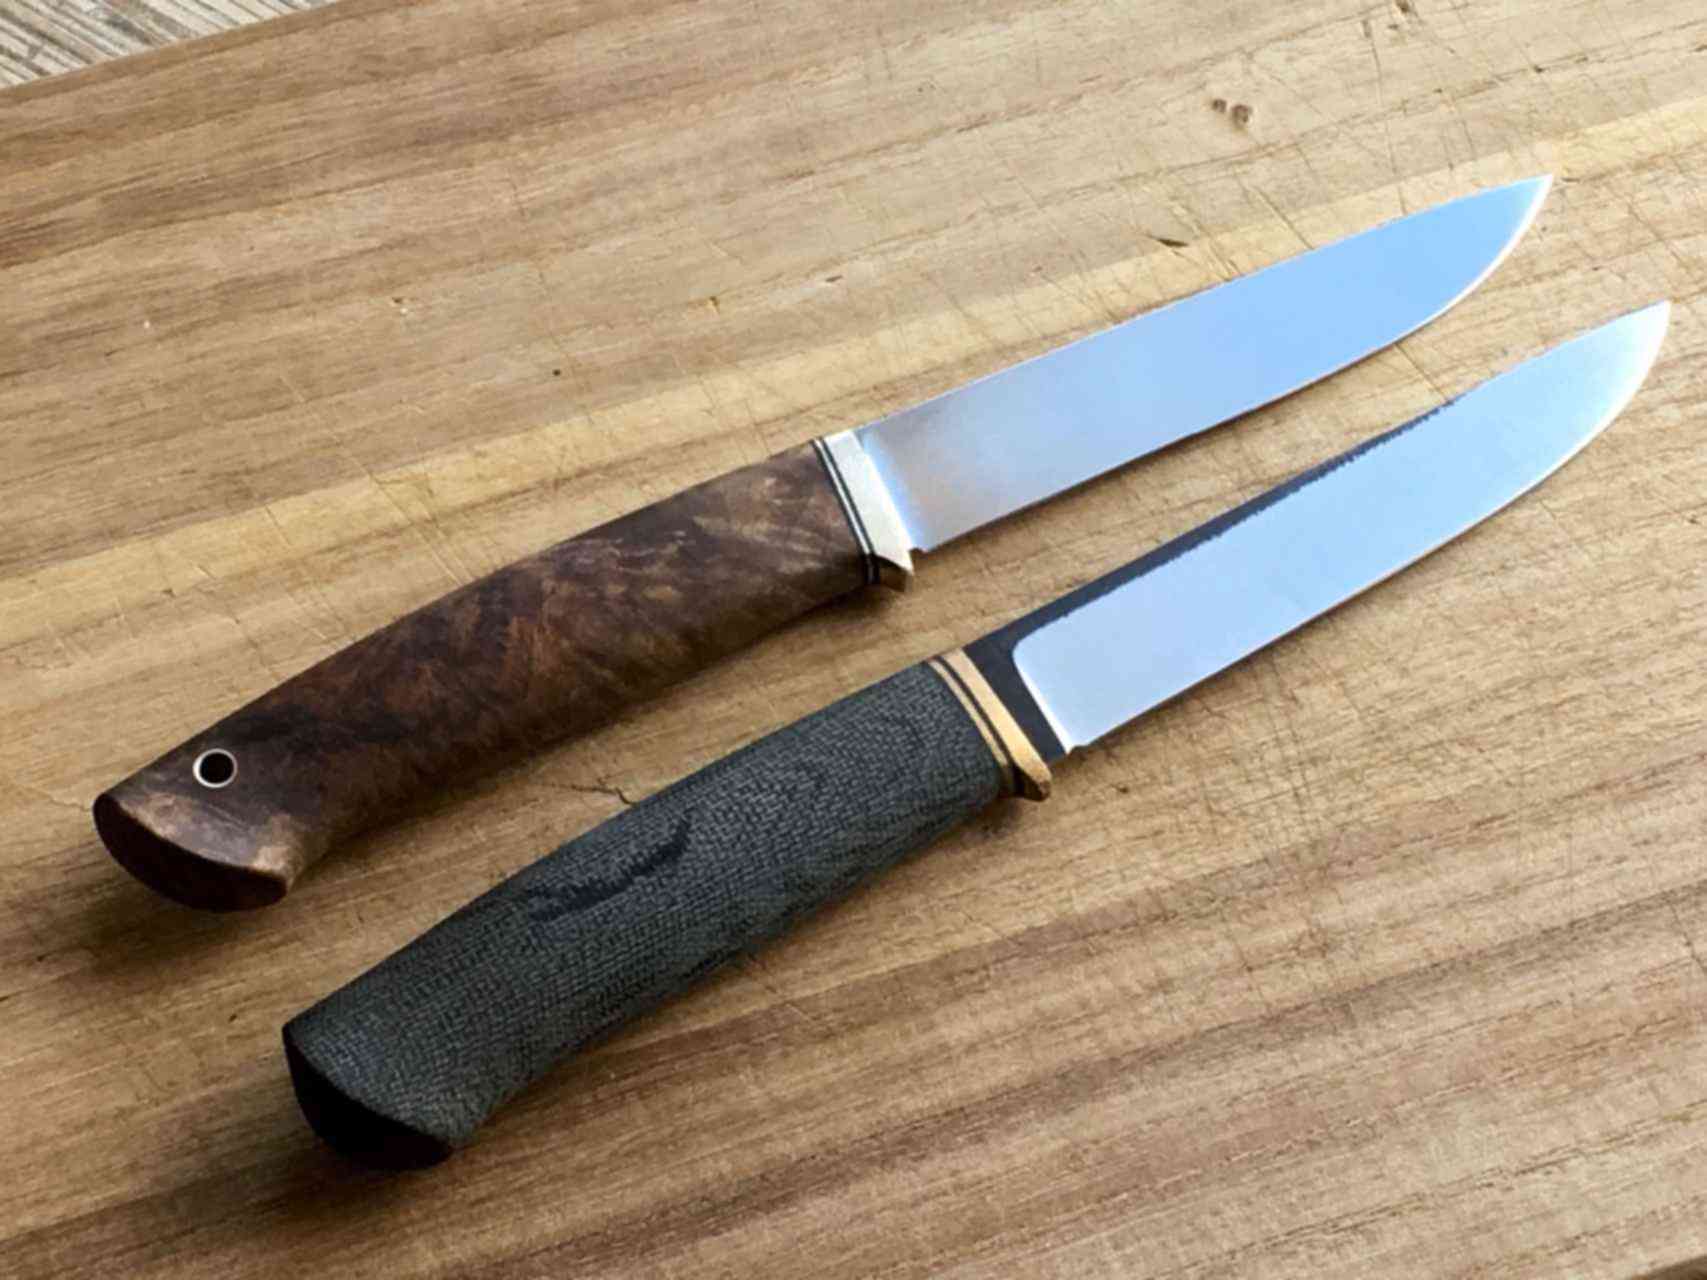 Какой стал лучше для ножа. Нож сталь 50х14мф. N690. Сталь n690co для ножей. Японская нержавейка ножей.